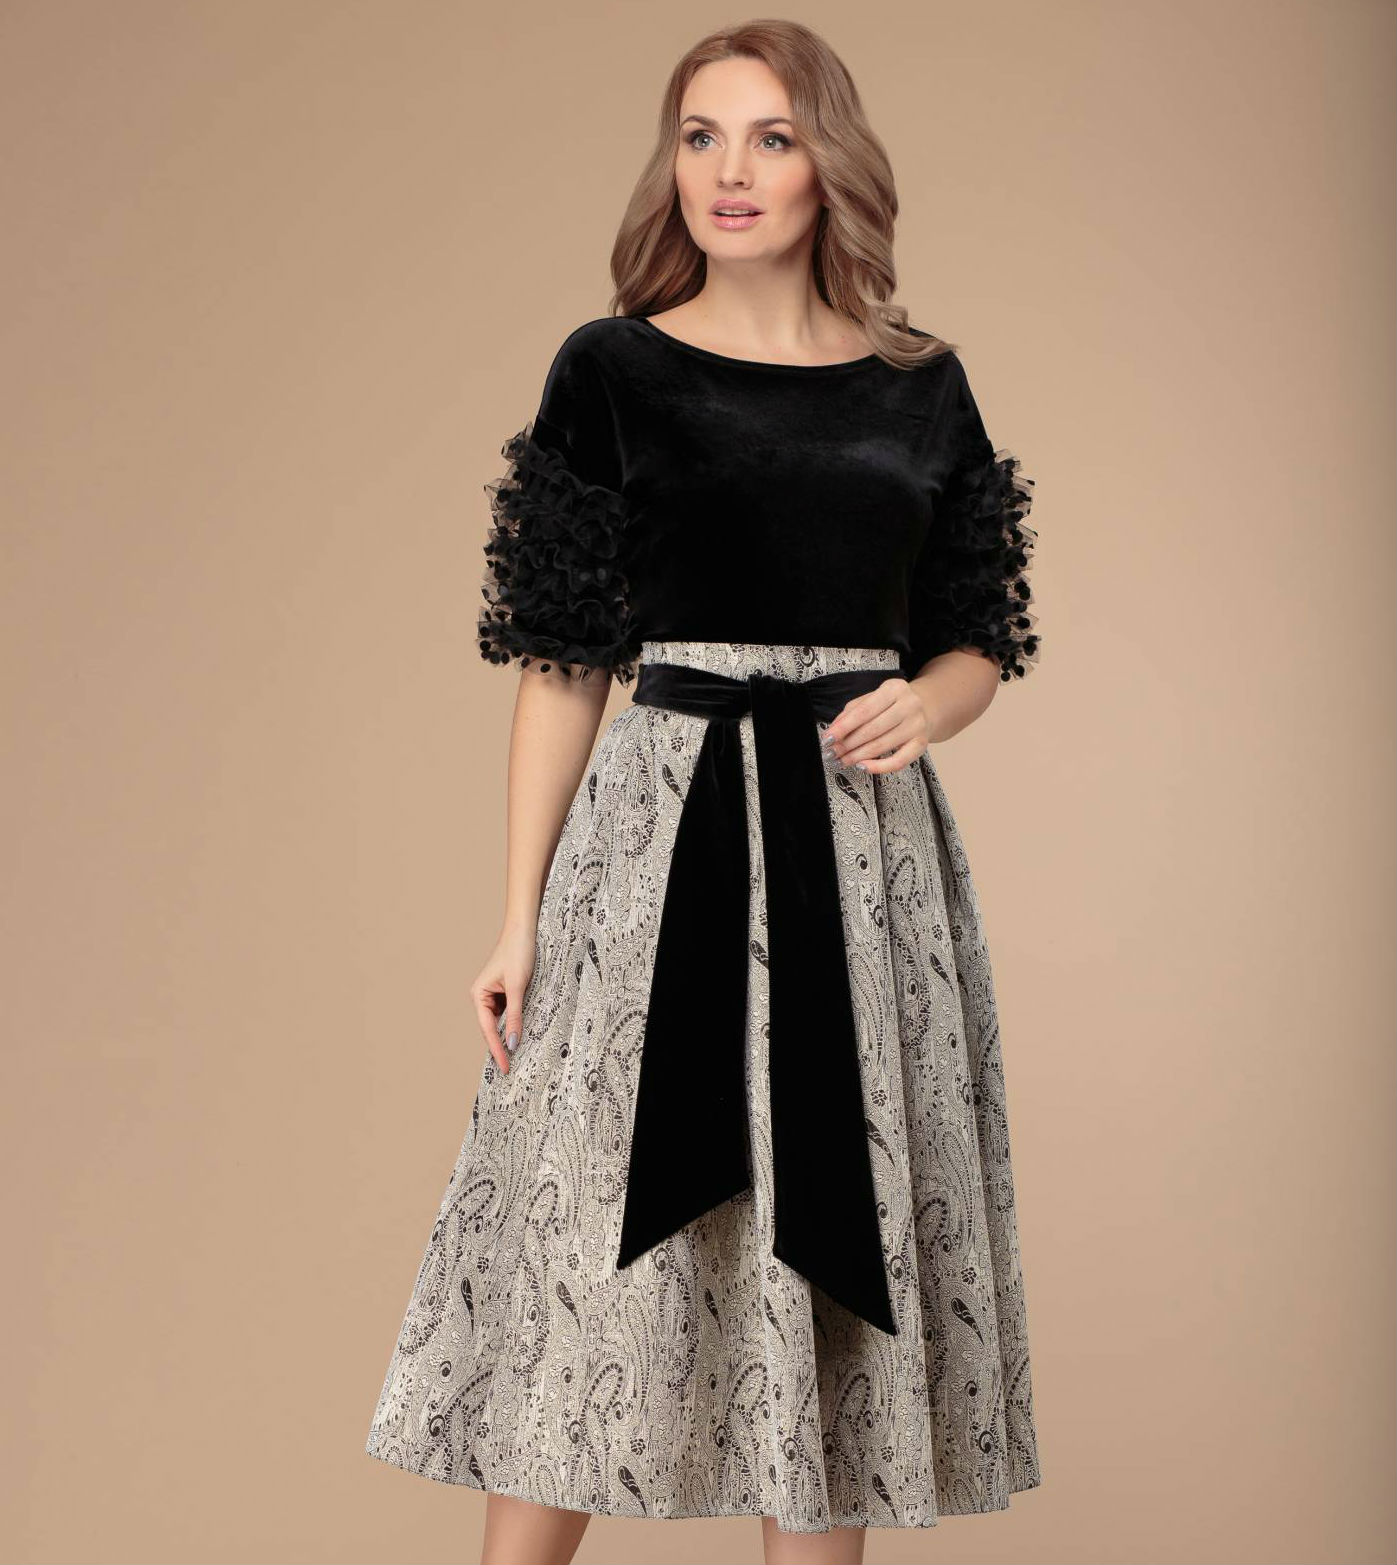 Комплект из юбки и блузки с оборками на рукавах, черный с серым